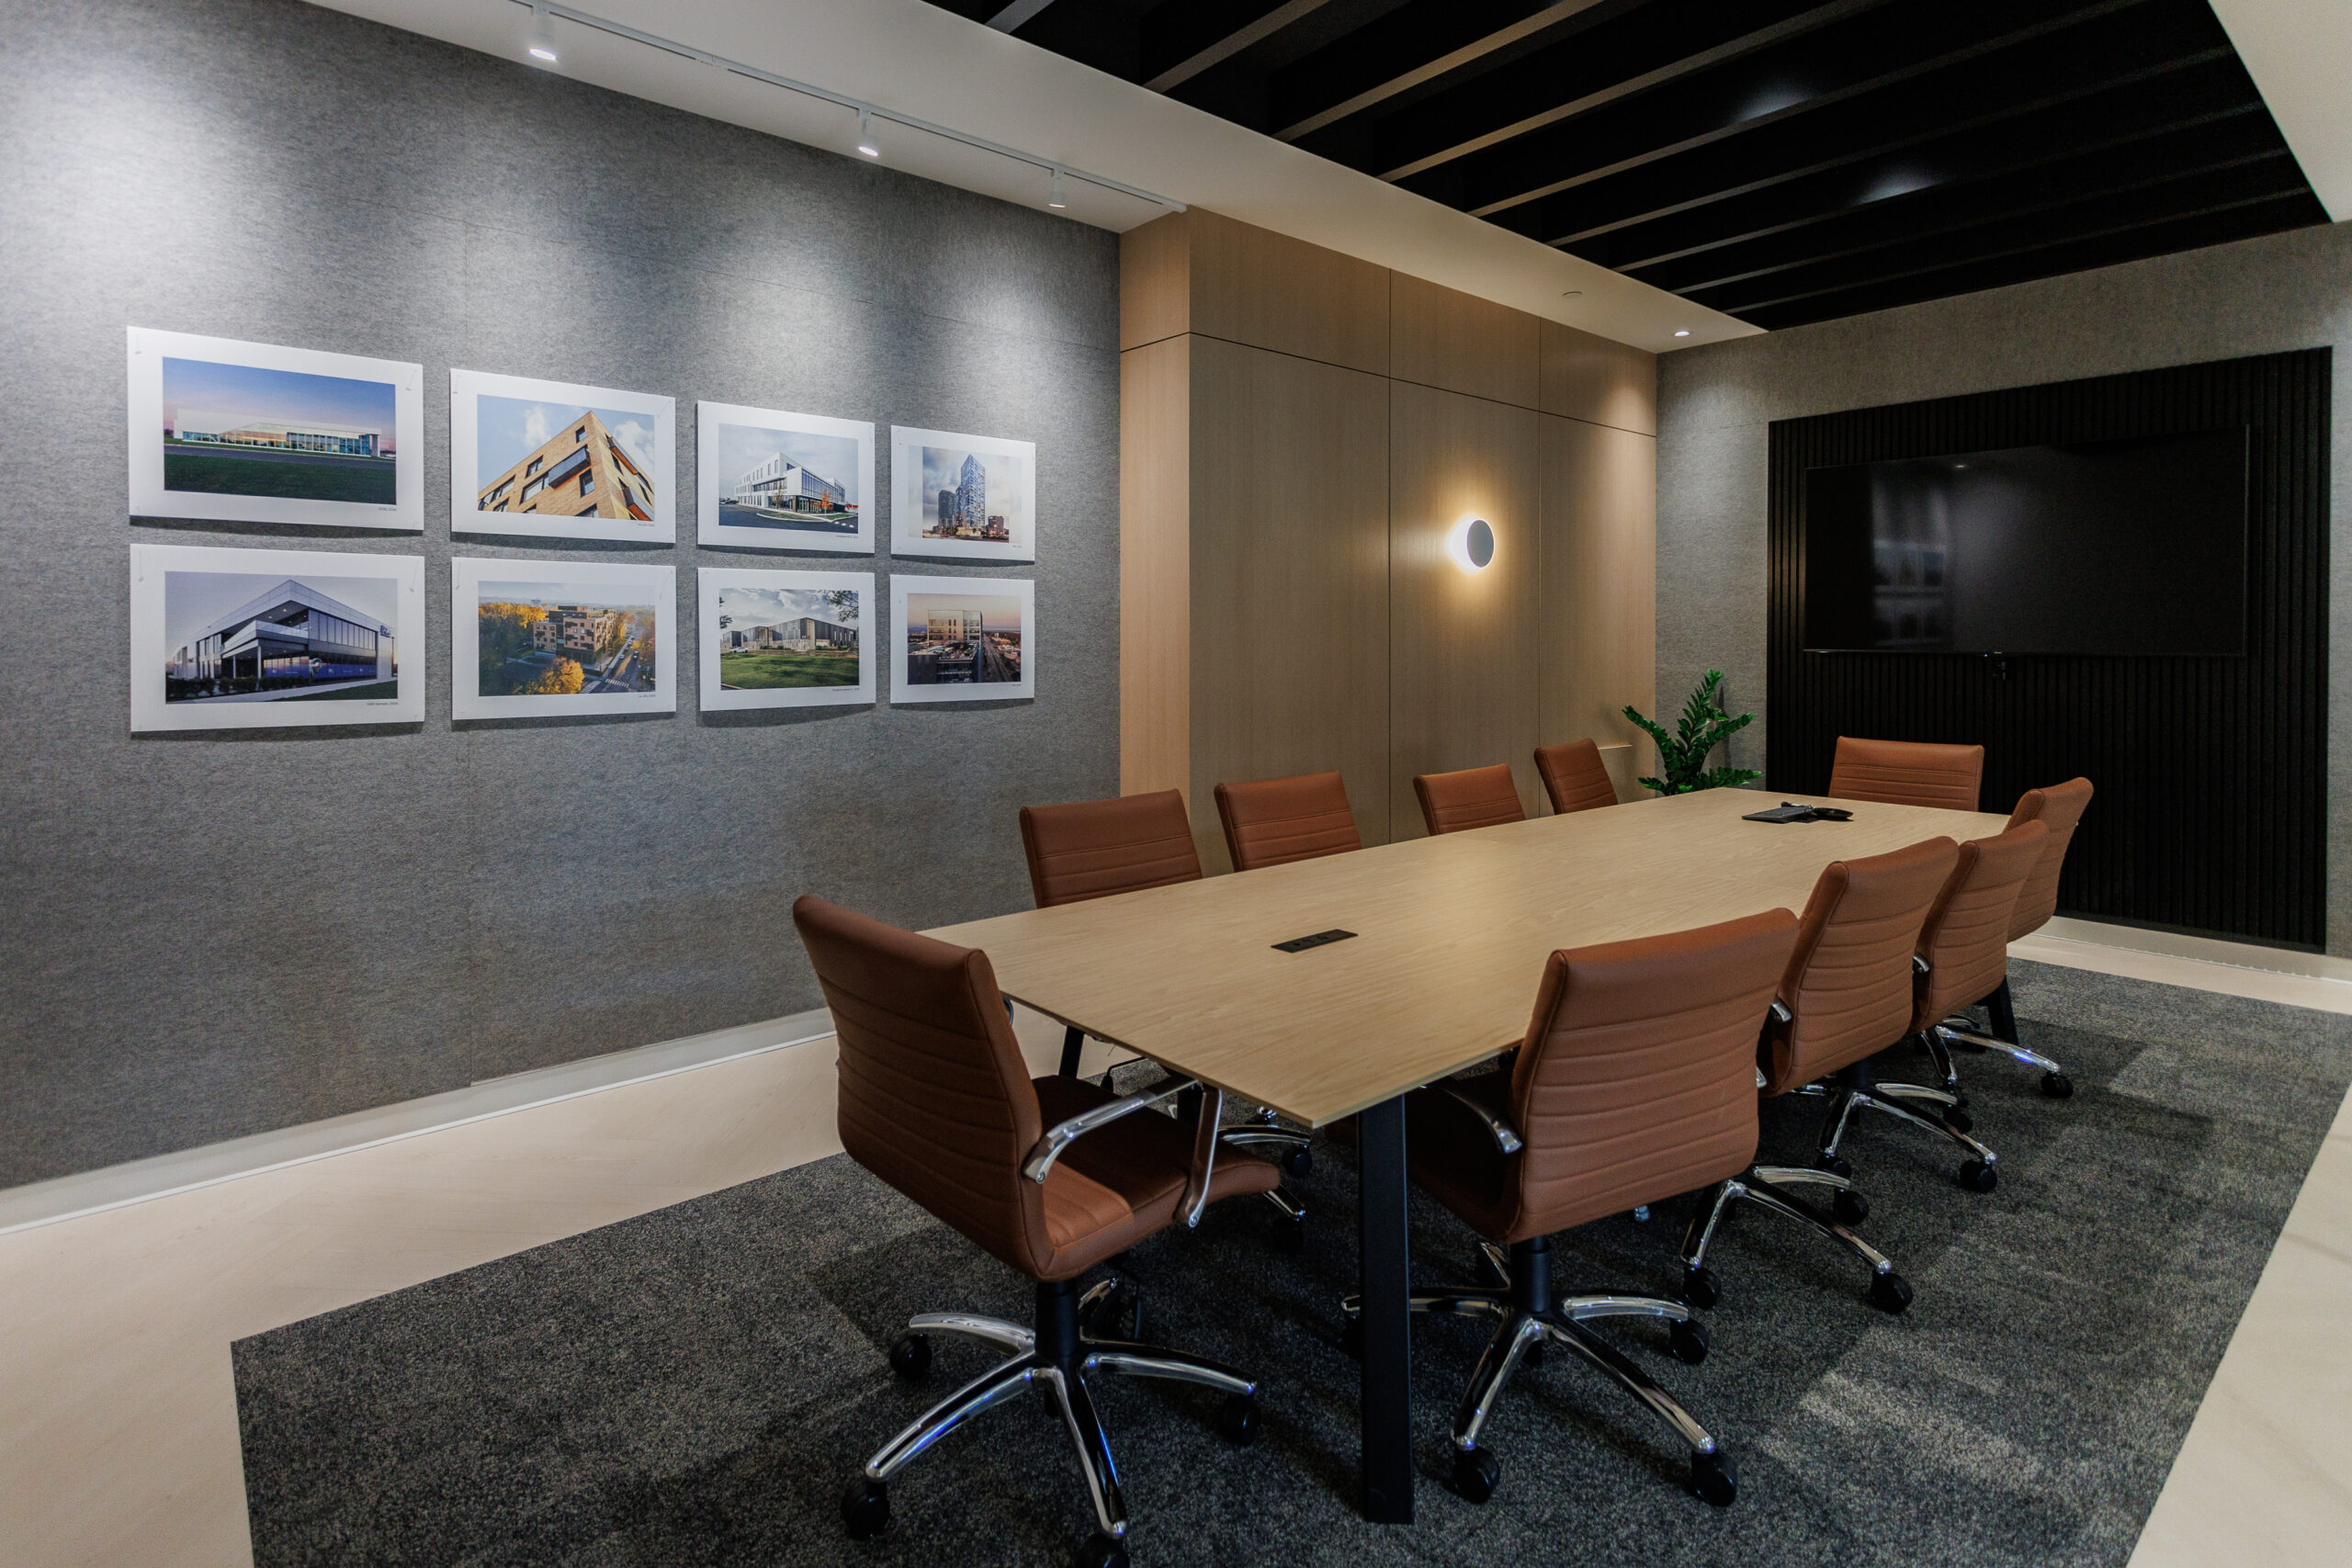 Conference room design